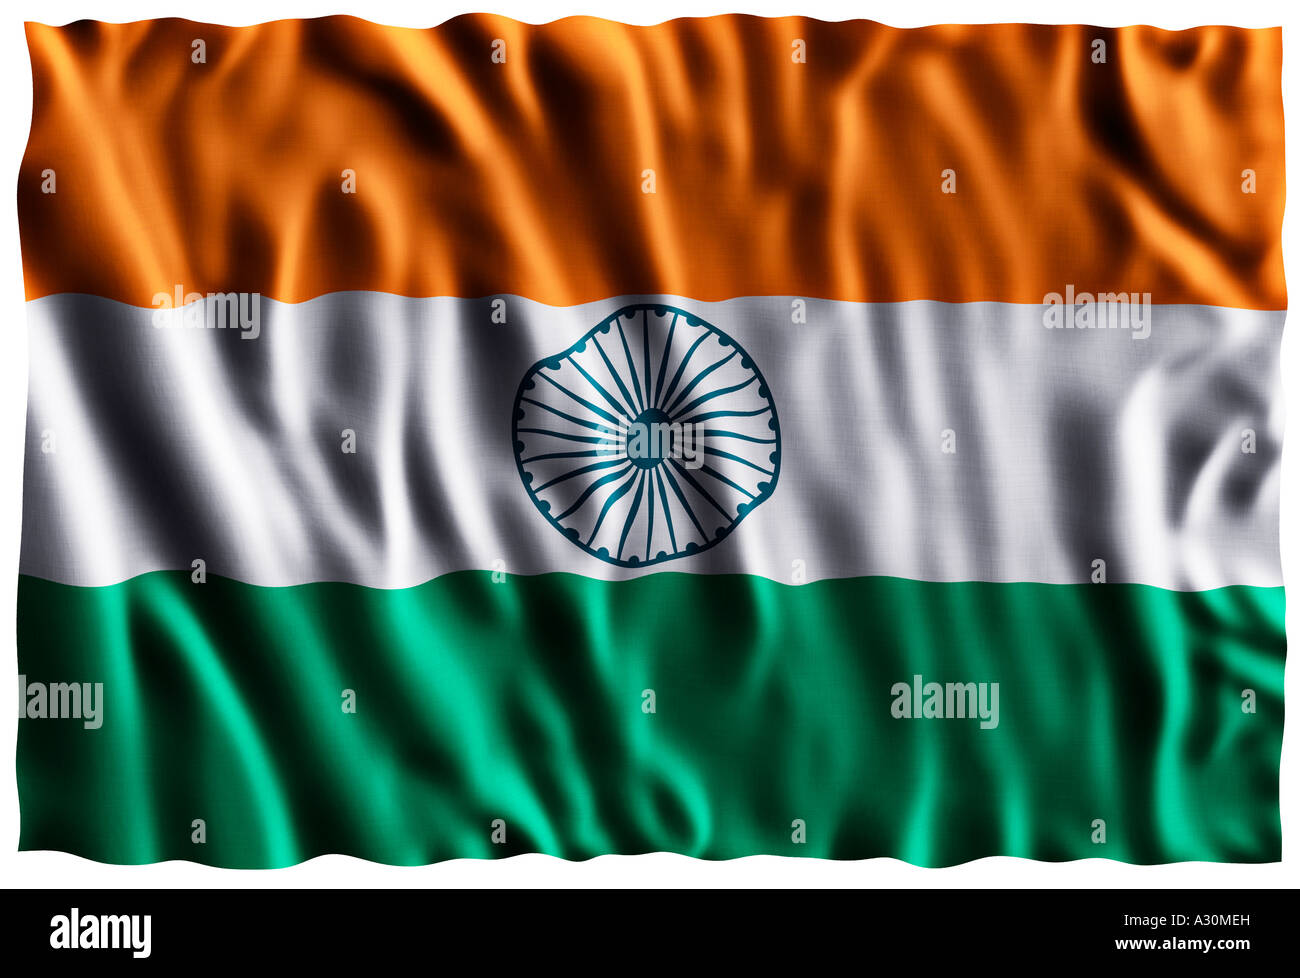 National flag of India Stock Photo - Alamy